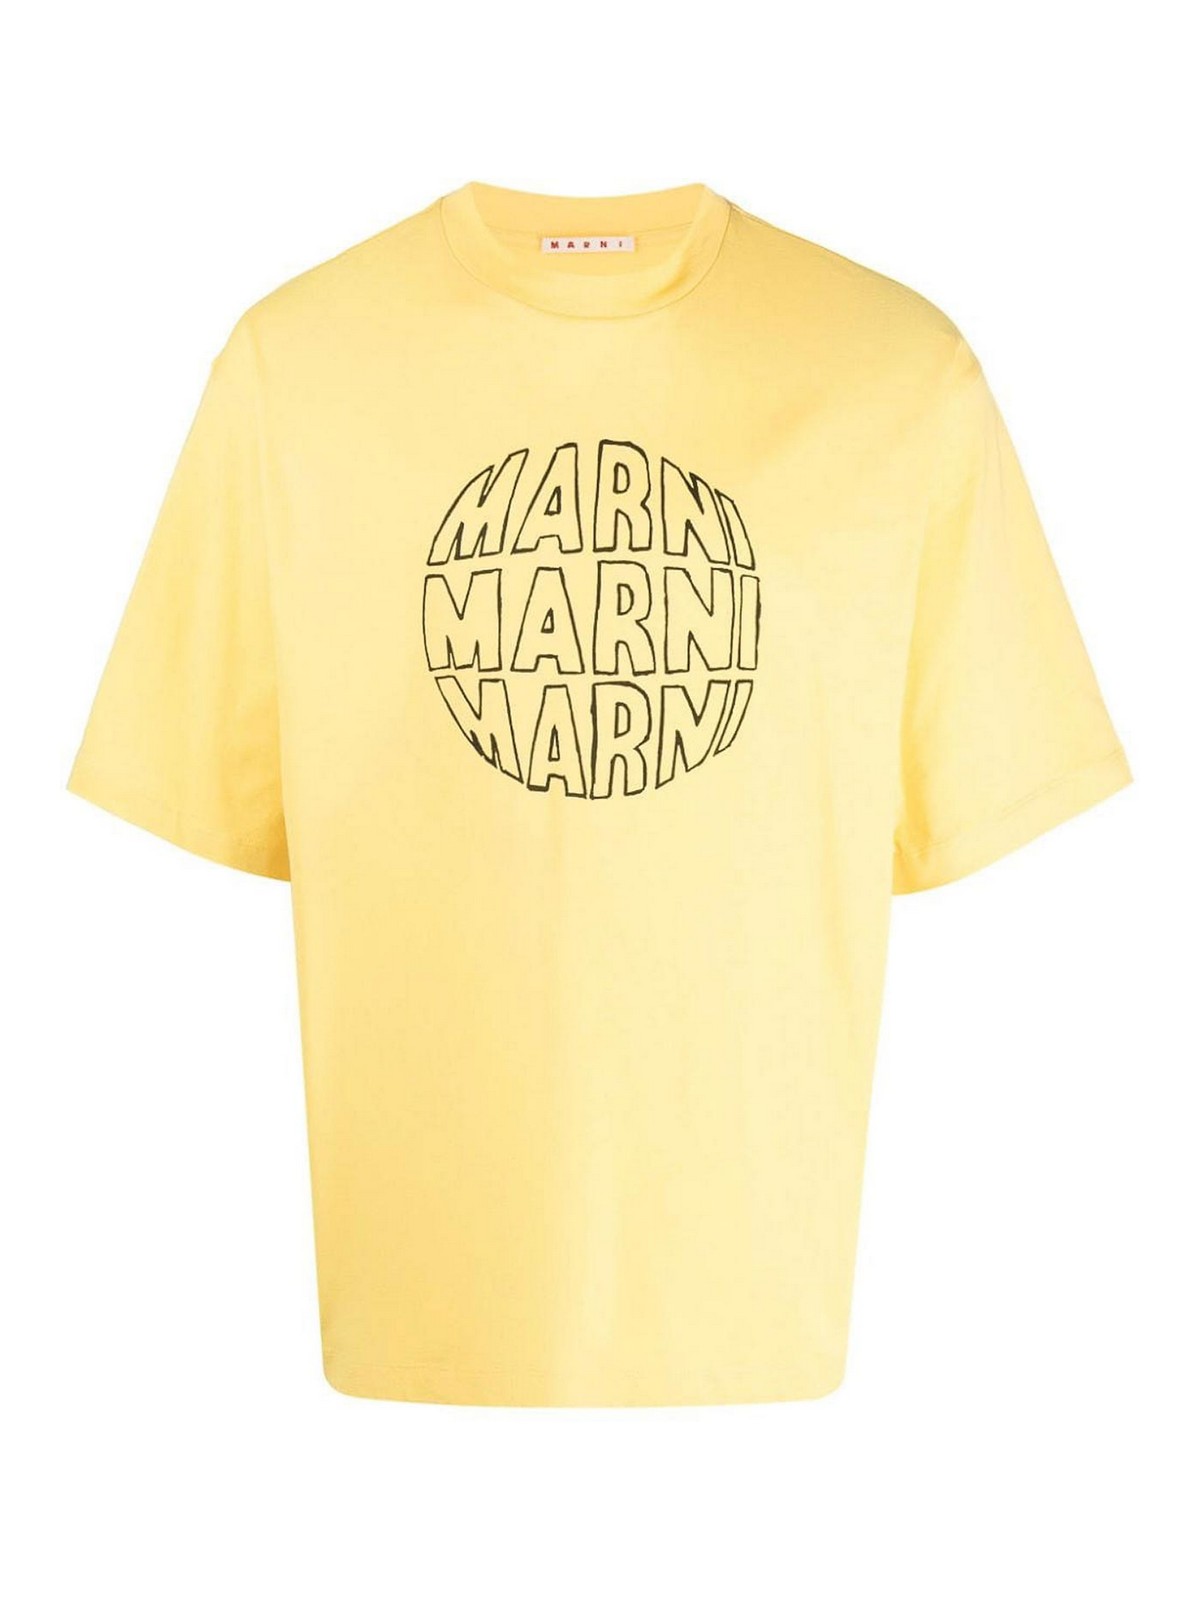 T-shirts Marni - Marni logo tee - HUMU0223PGUSCV80CLY56